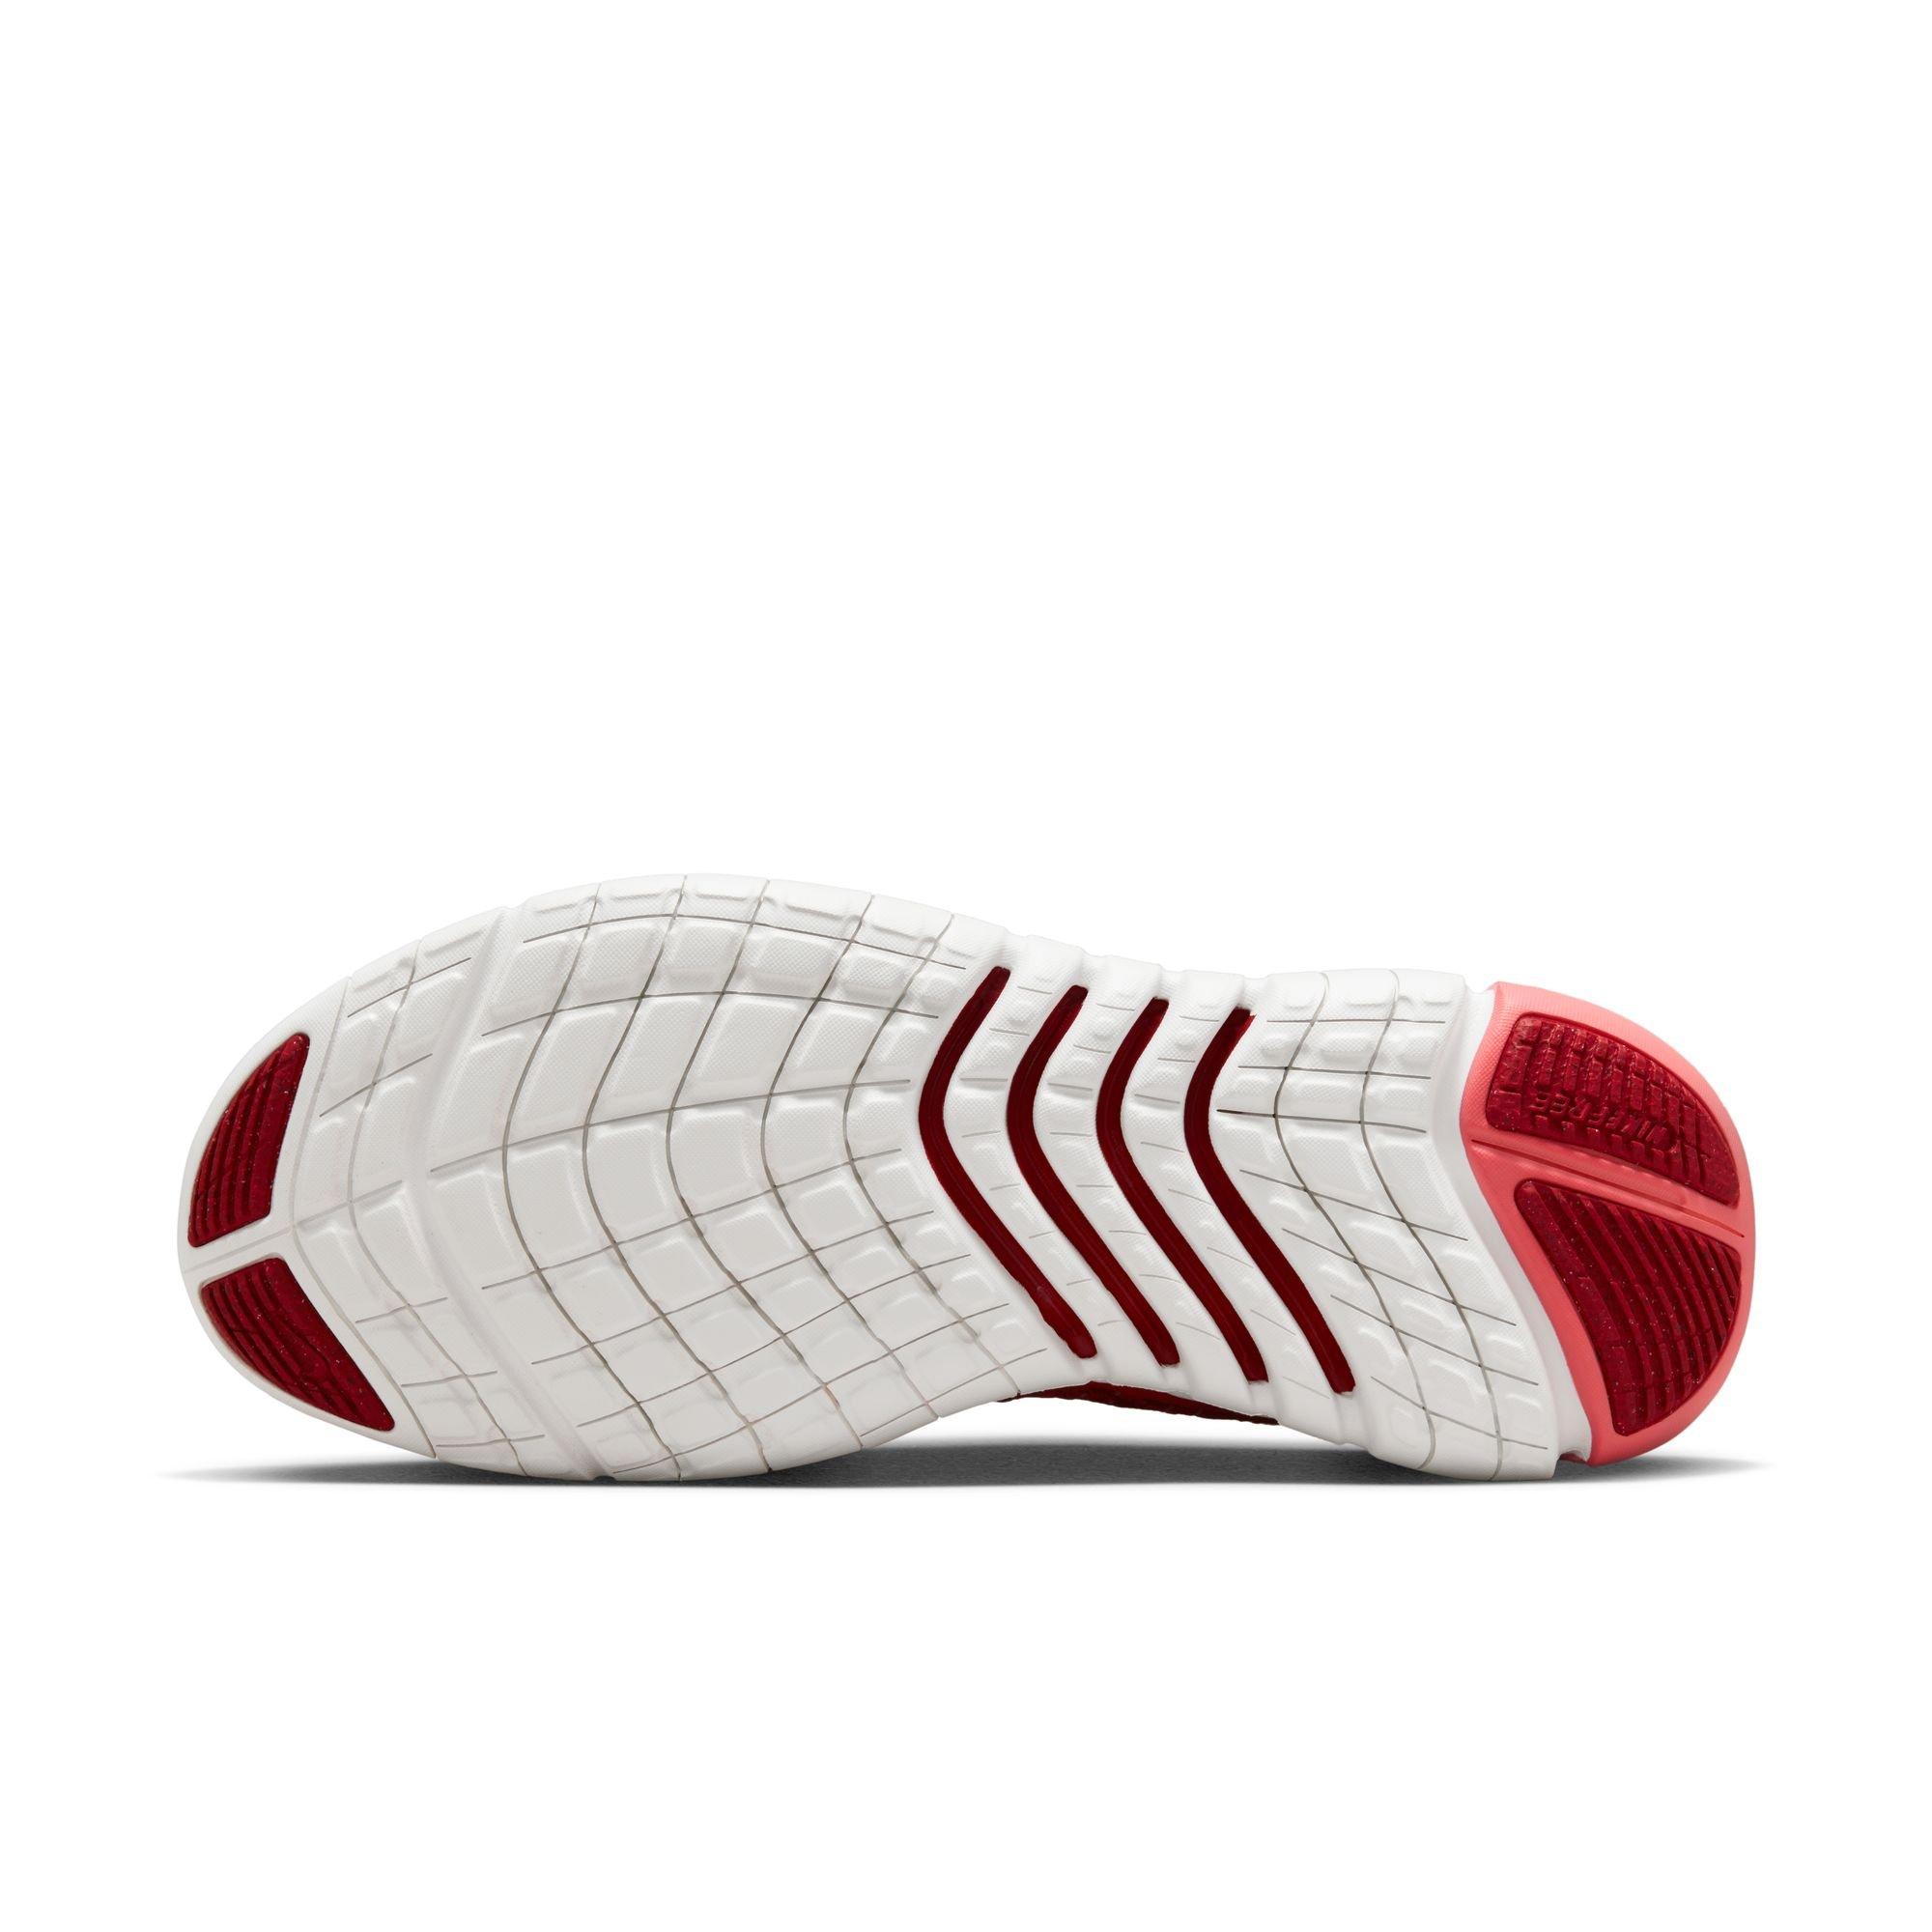 Cubo Moler Fuera de plazo Nike Free Run 5.0 "University Red/White/Gym Red" Women's Road Running Shoe